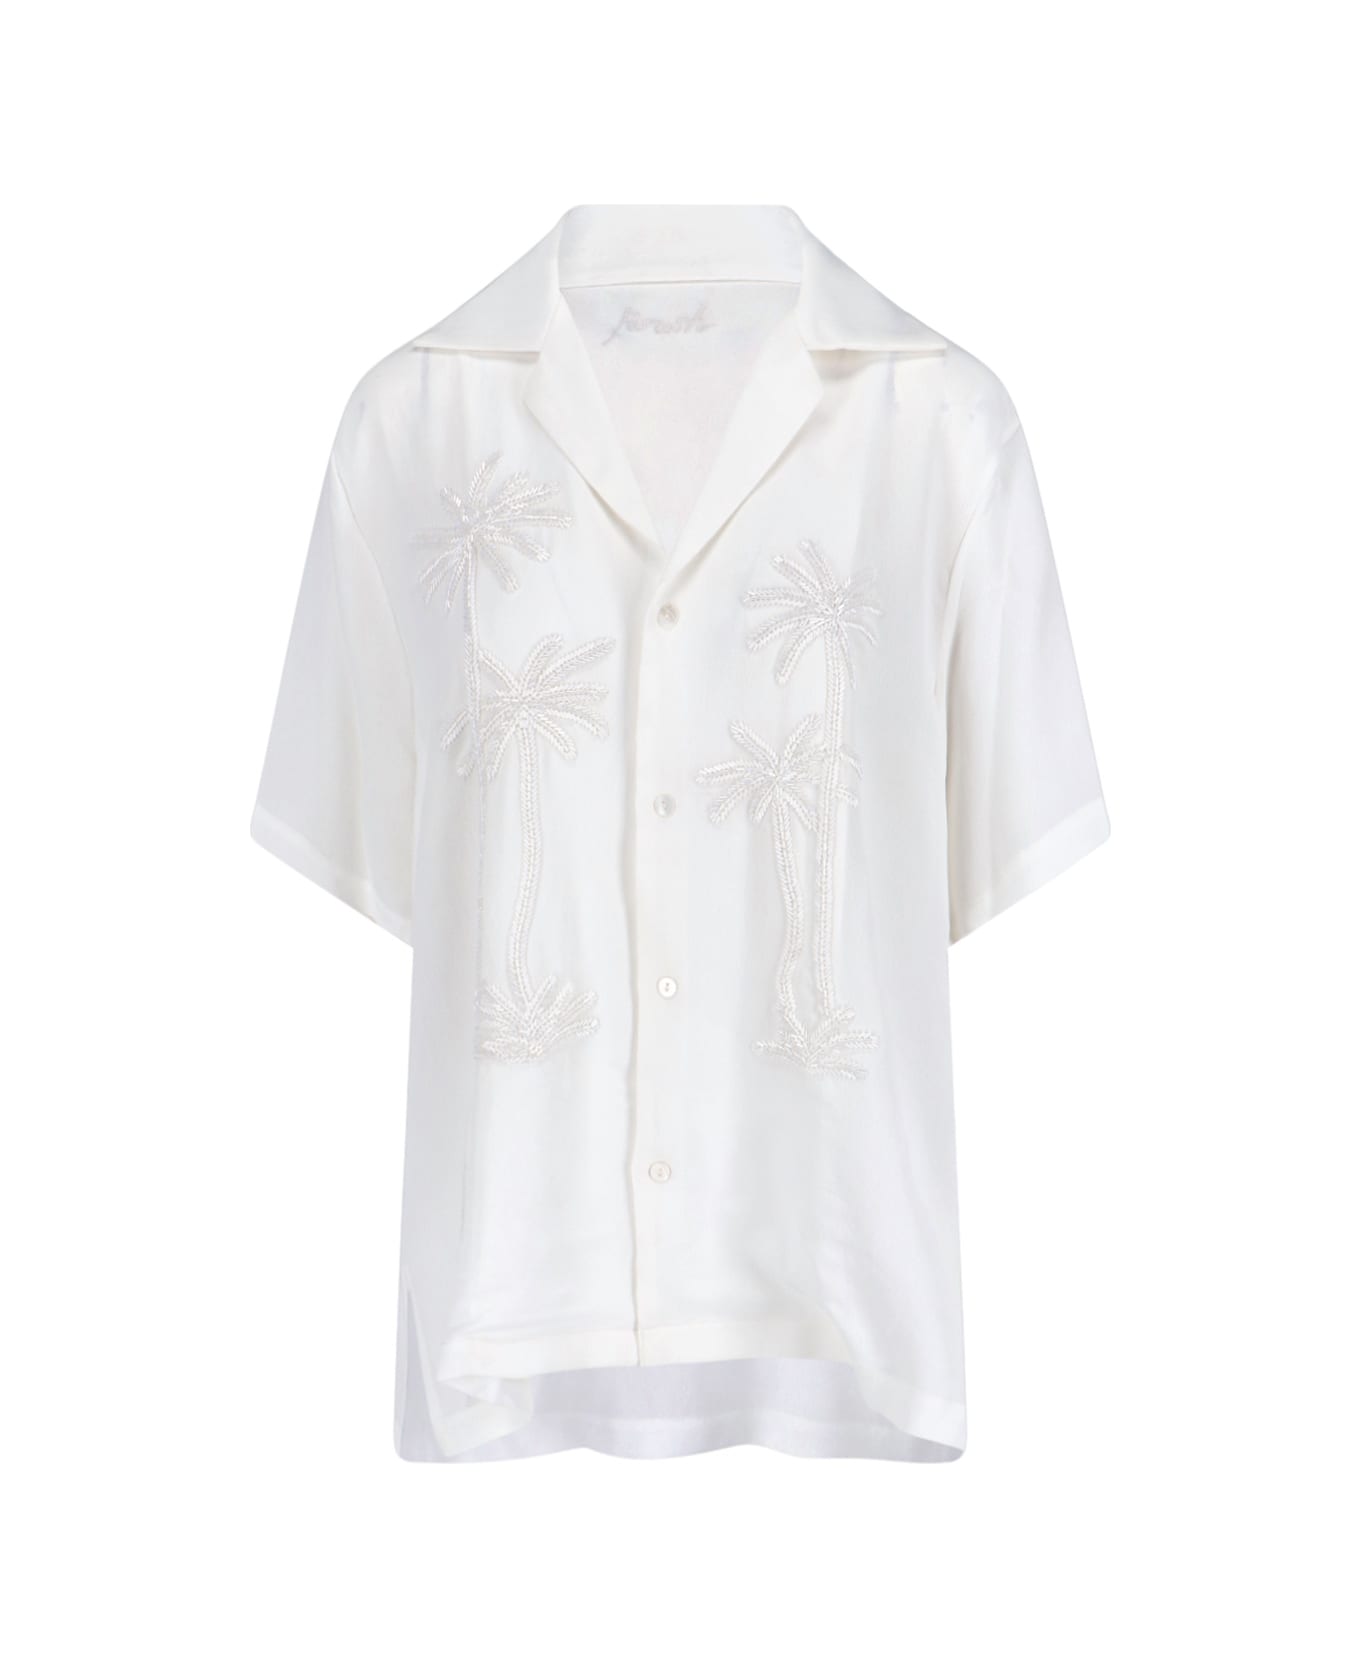 Parosh Short-sleeved Shirt - White